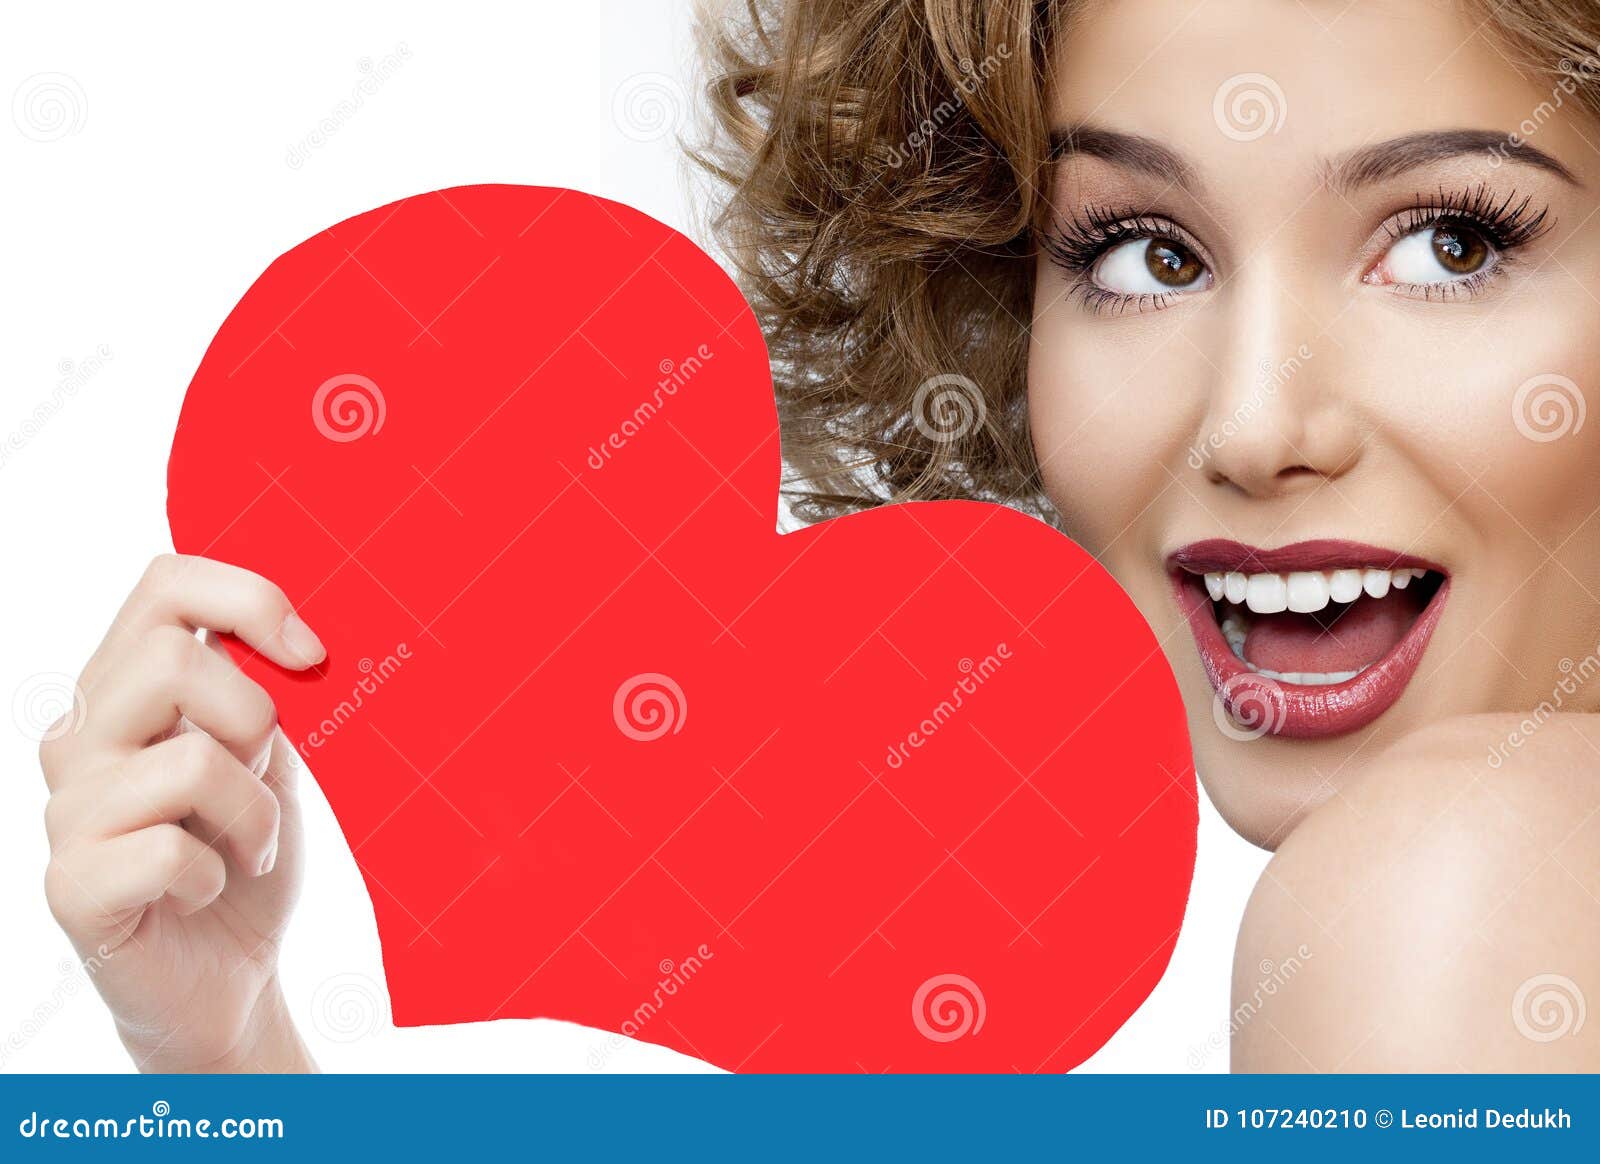 Herzvalentinsgruß ` s der Frauenschönheit rote Liebe. Attraktives lächelndes Porträt der jungen Frau der Schönheit lokalisiert auf Lächelnzahnlippenroter Herzvalentinsgruß ` s der Laternehaut toothy Liebe